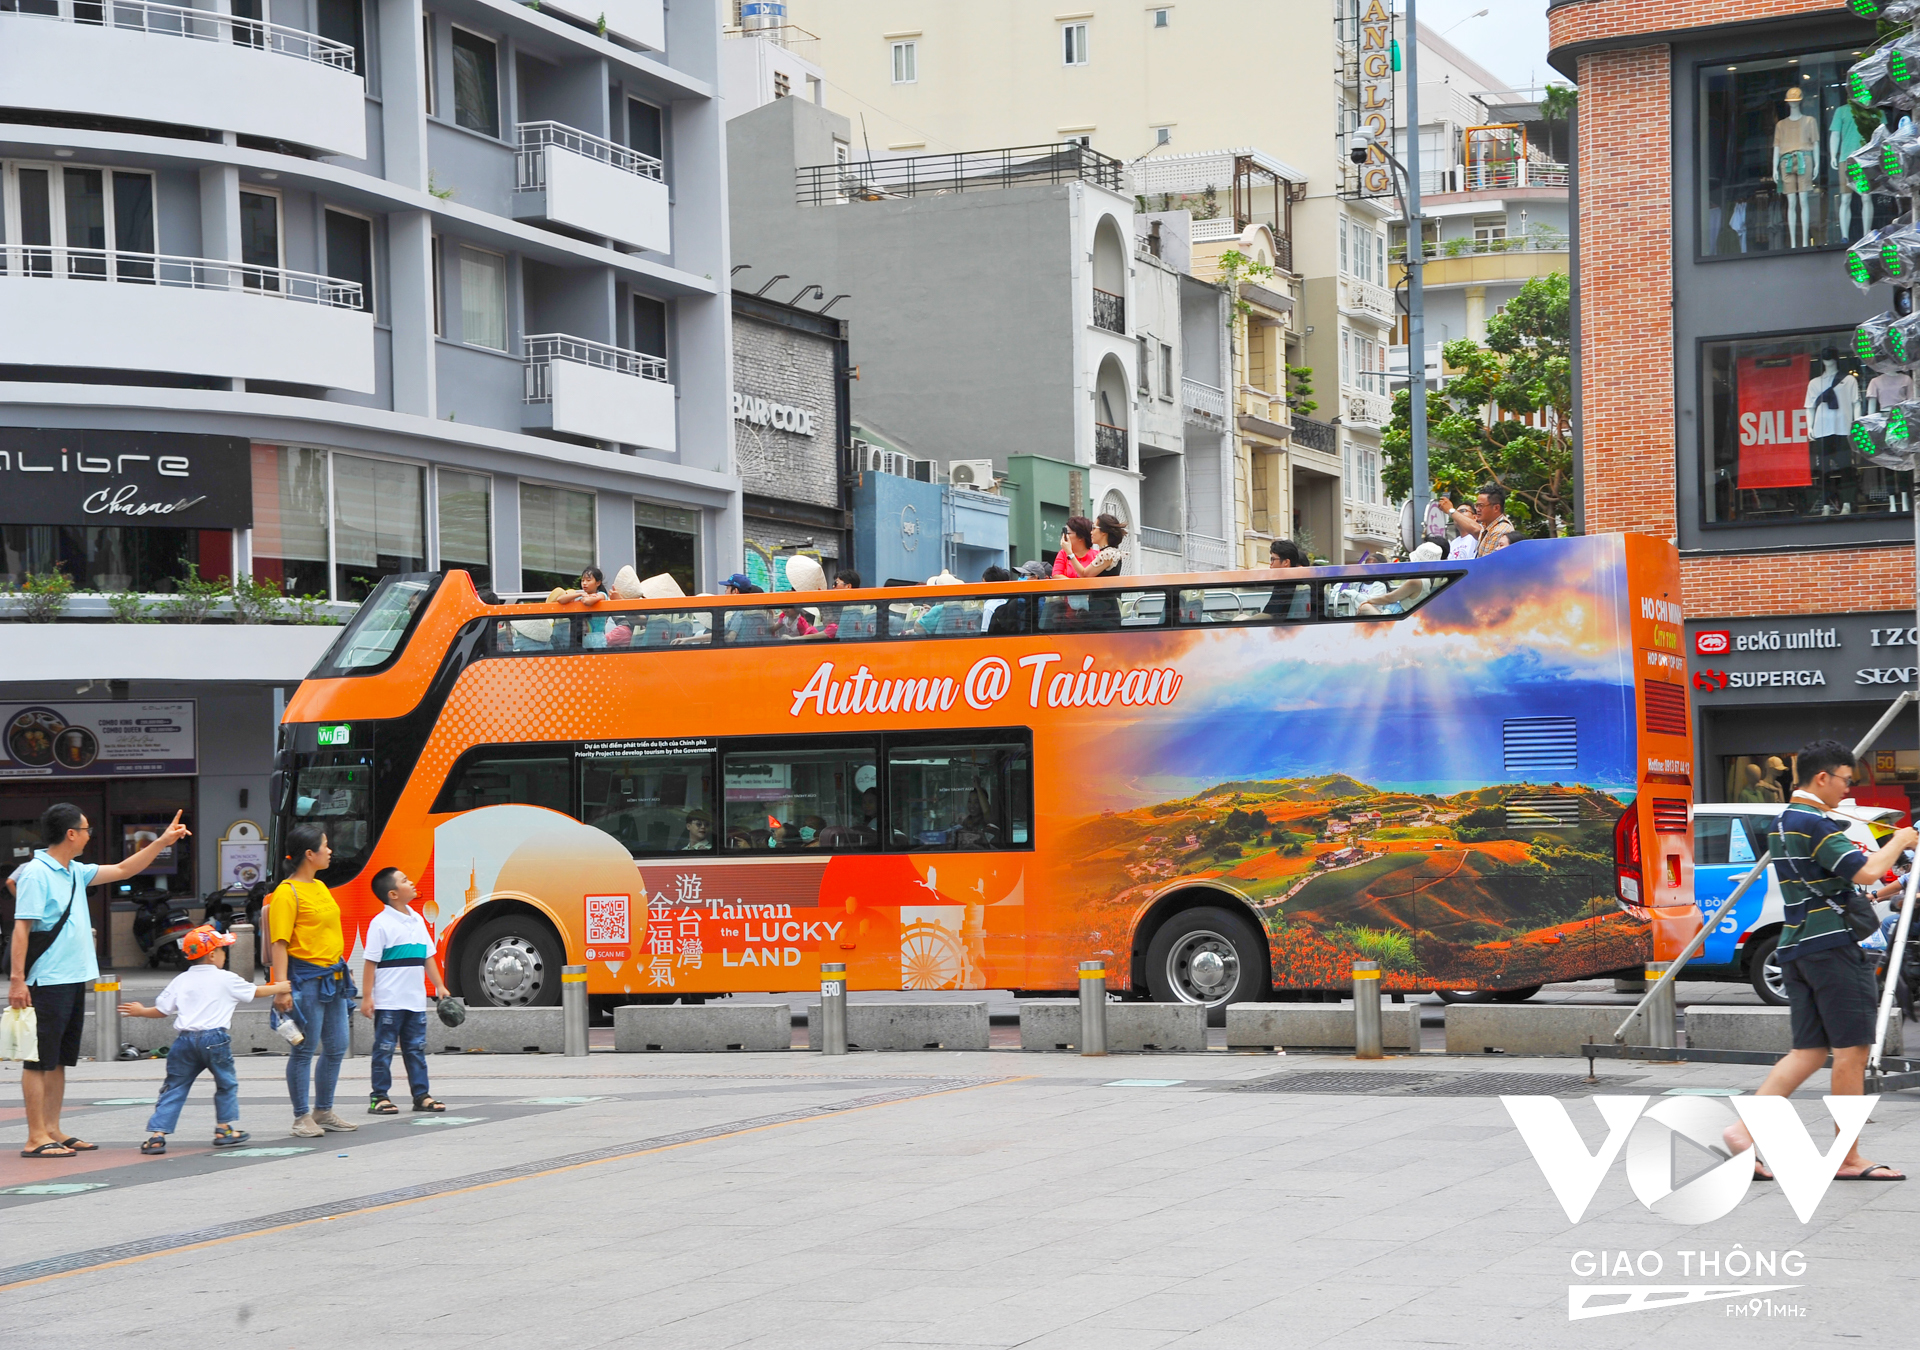 Trải nghiệm dạo quanh thành phố bằng xe buýt 2 tầng cũng được nhiều người dân và du khách lựa chọn trong kỳ nghỉ lễ.